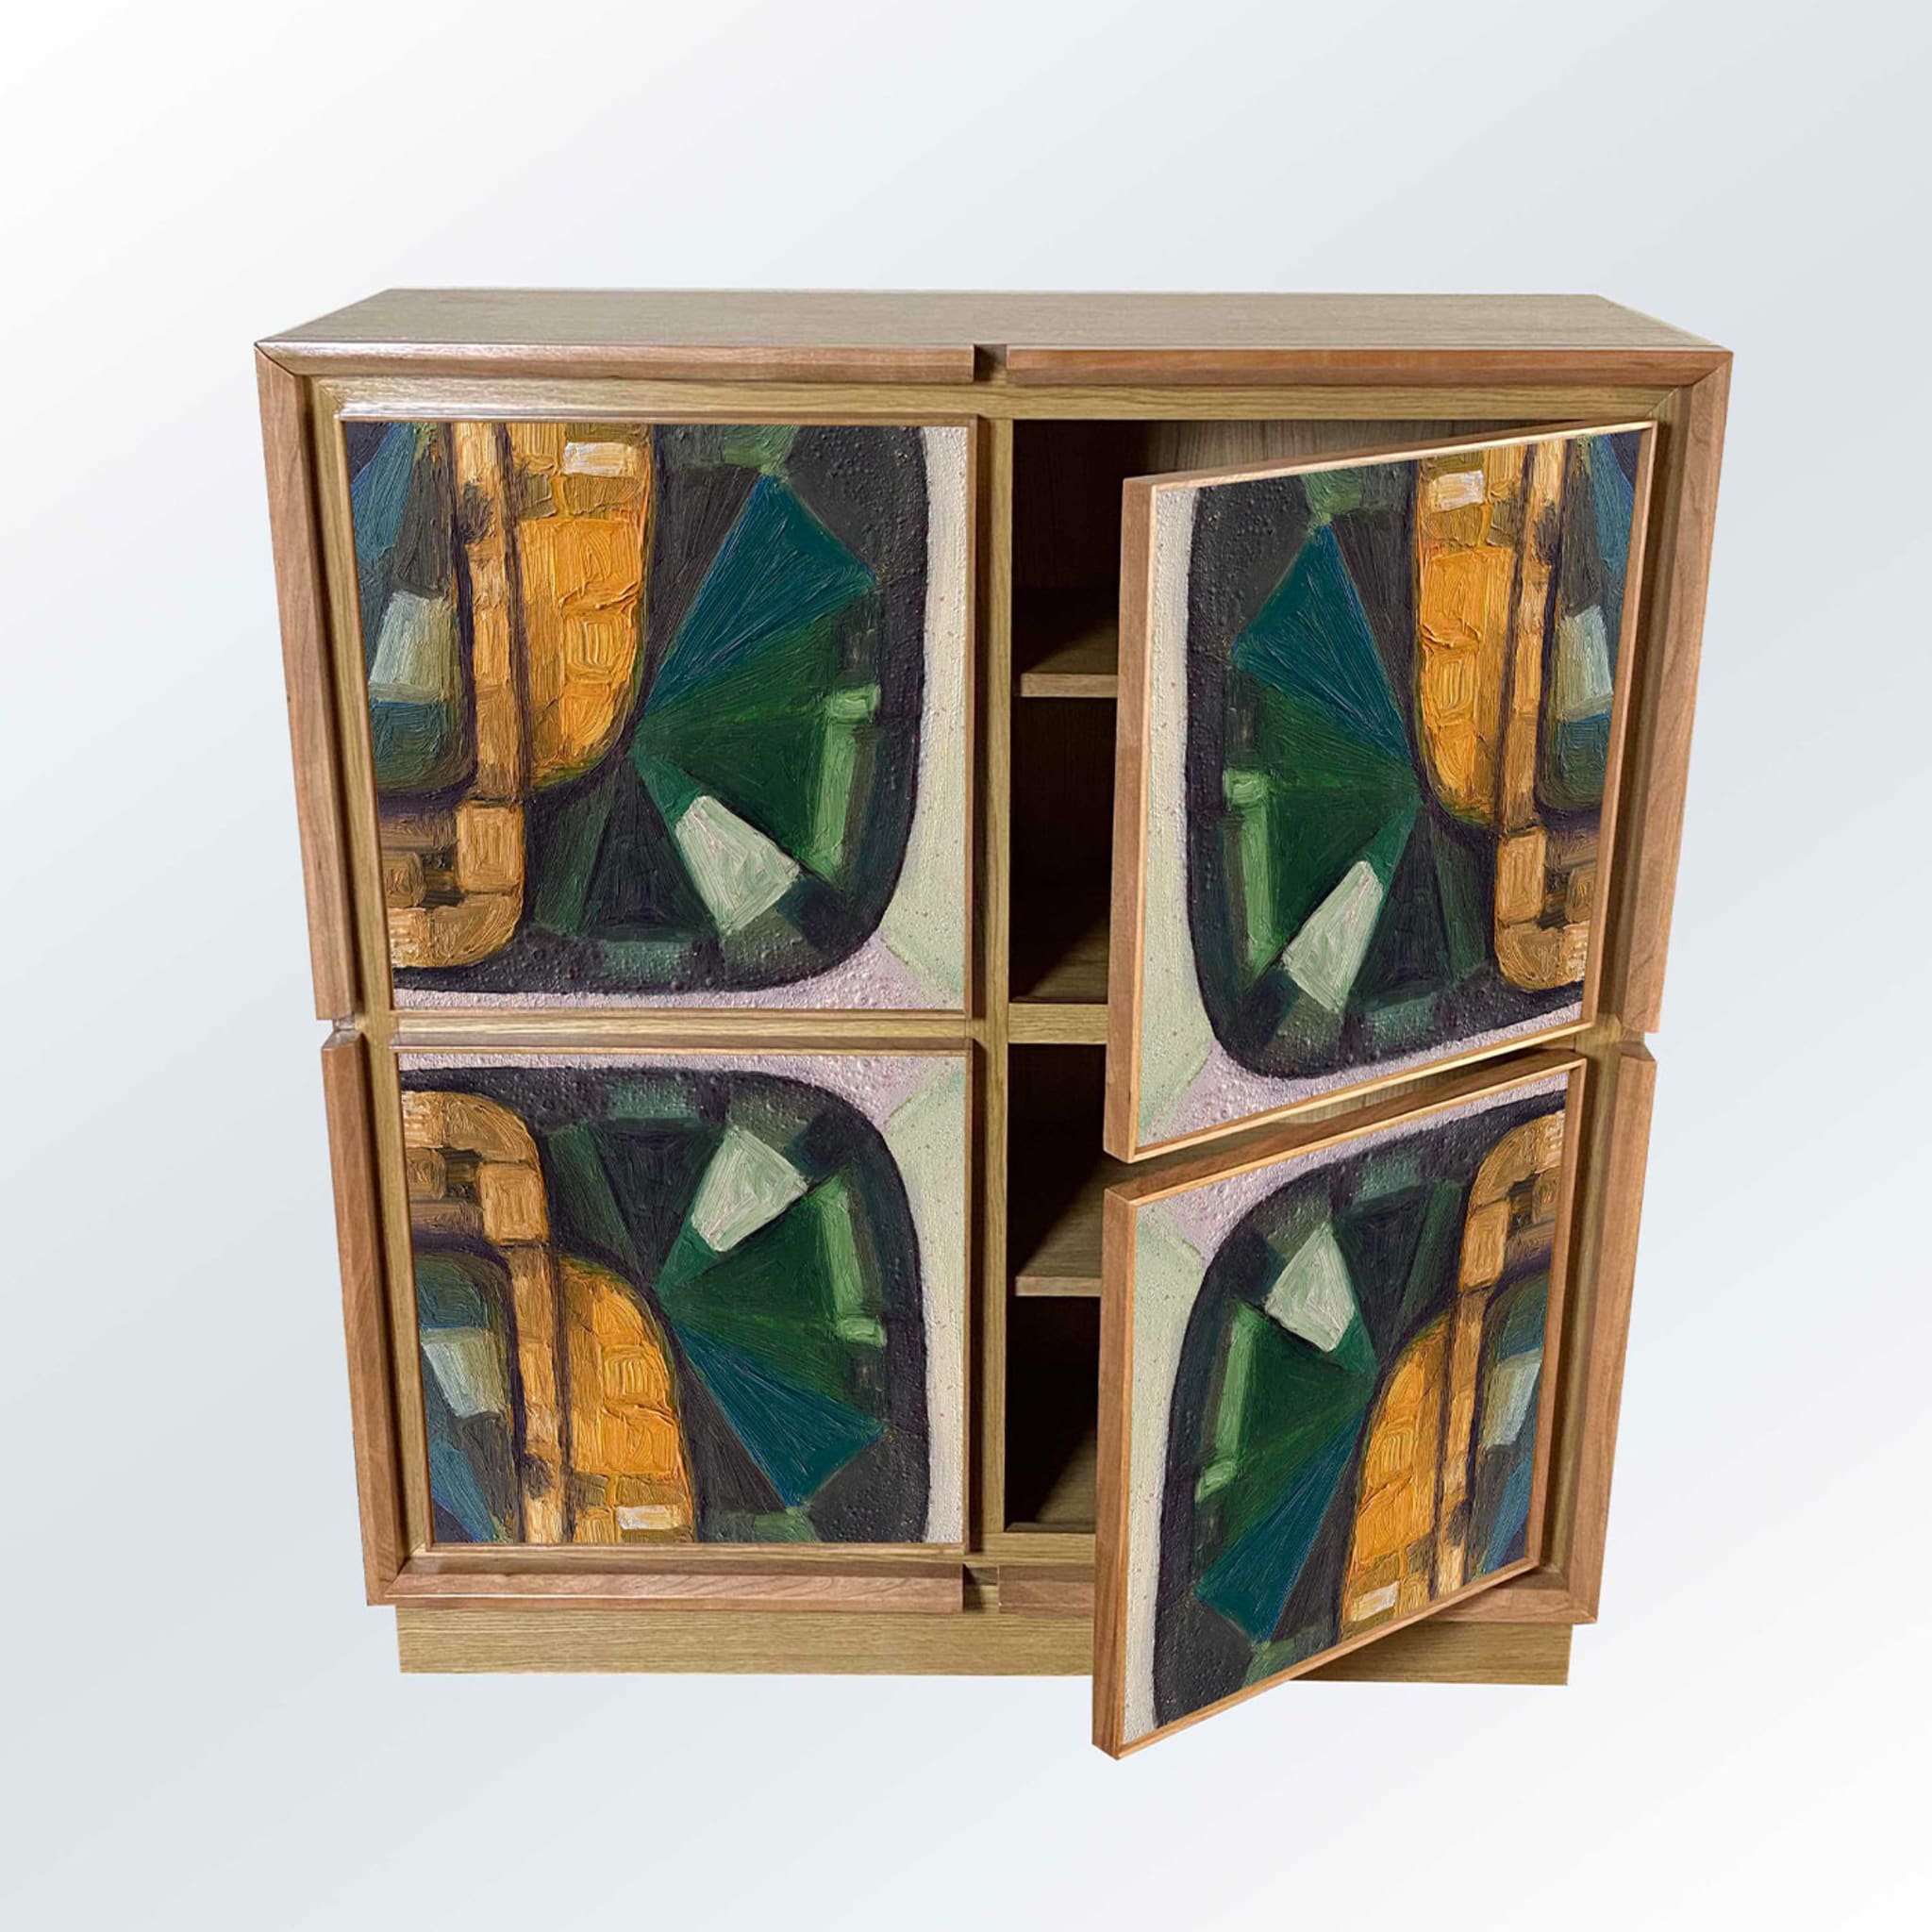 Astratta Cinque Cabinet by Mascia Meccani - Alternative view 1